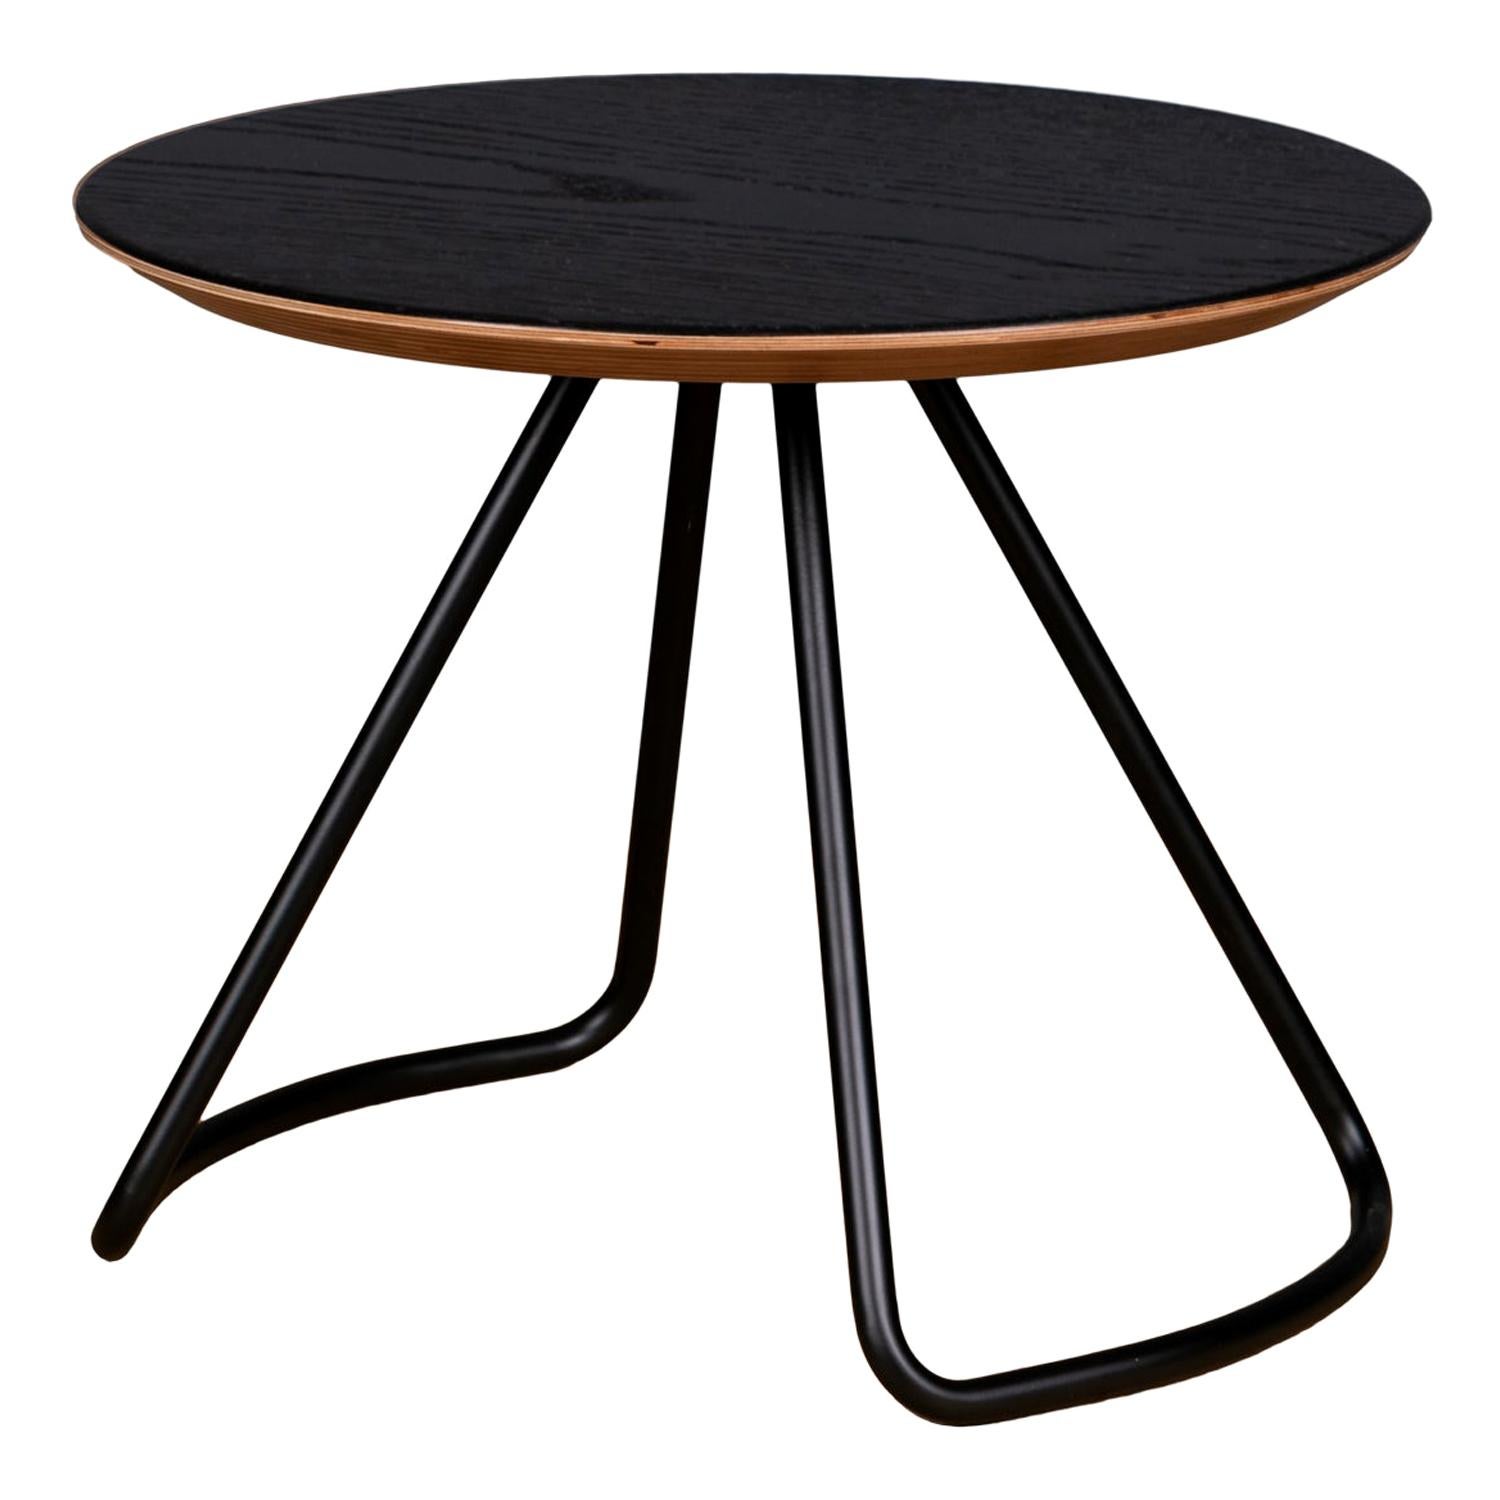 Sama Couchtisch, zeitgenössischer moderner minimalistischer Couchtisch aus schwarzer Eiche und schwarzem Metall